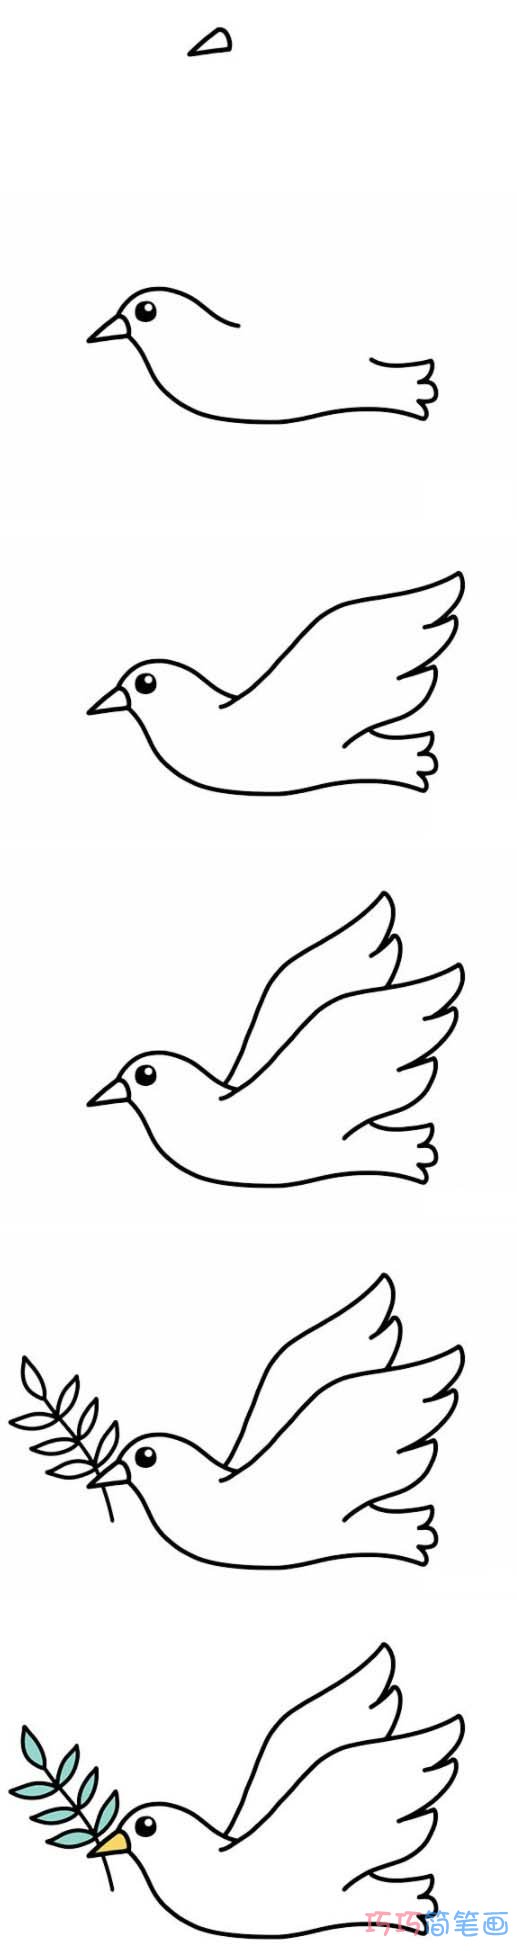 和平鸽的画法步骤图解步骤涂色简单